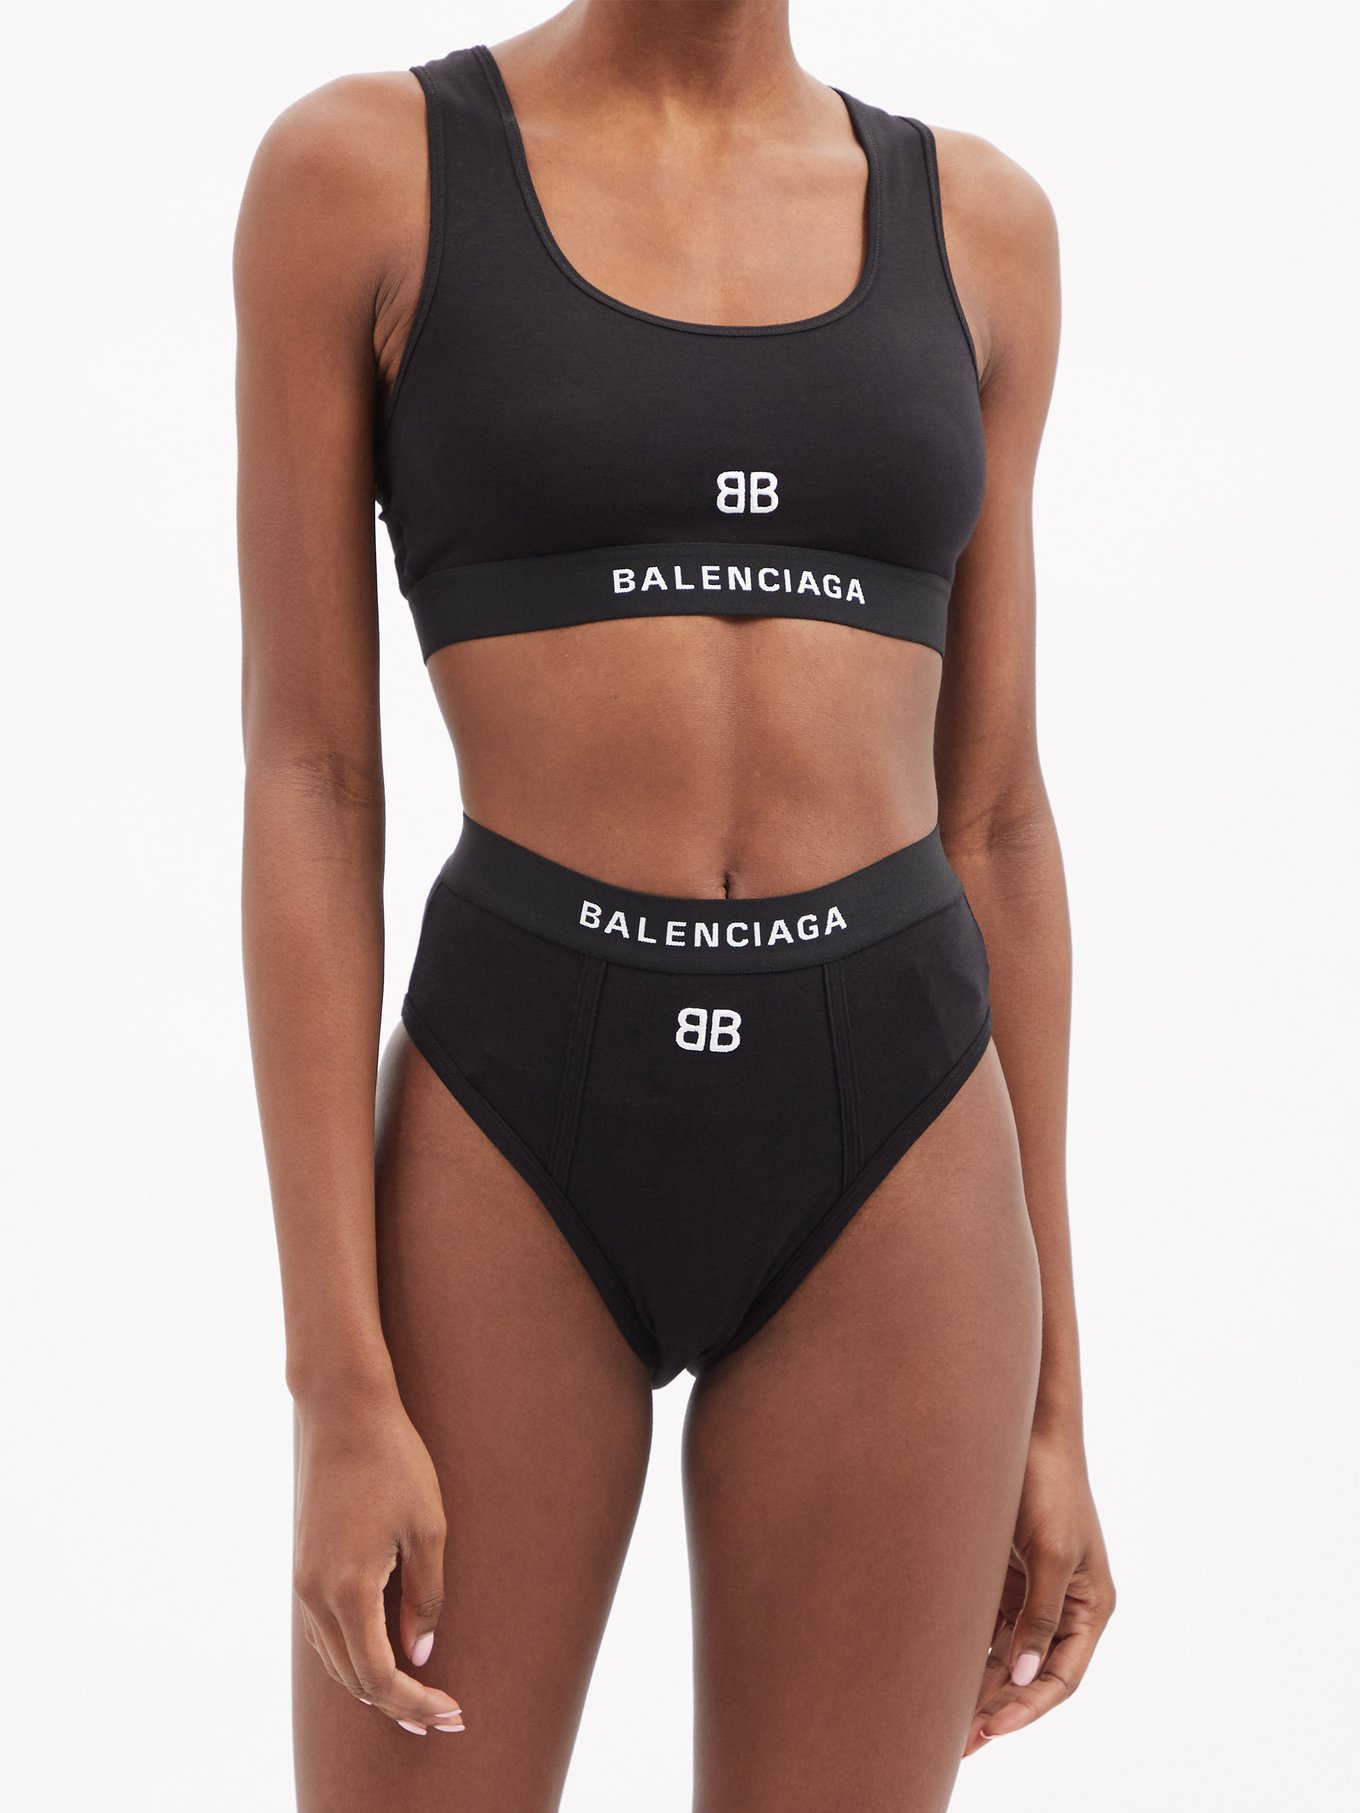 Balenciaga is selling 'Bridget Jones' lookalike briefs for $225